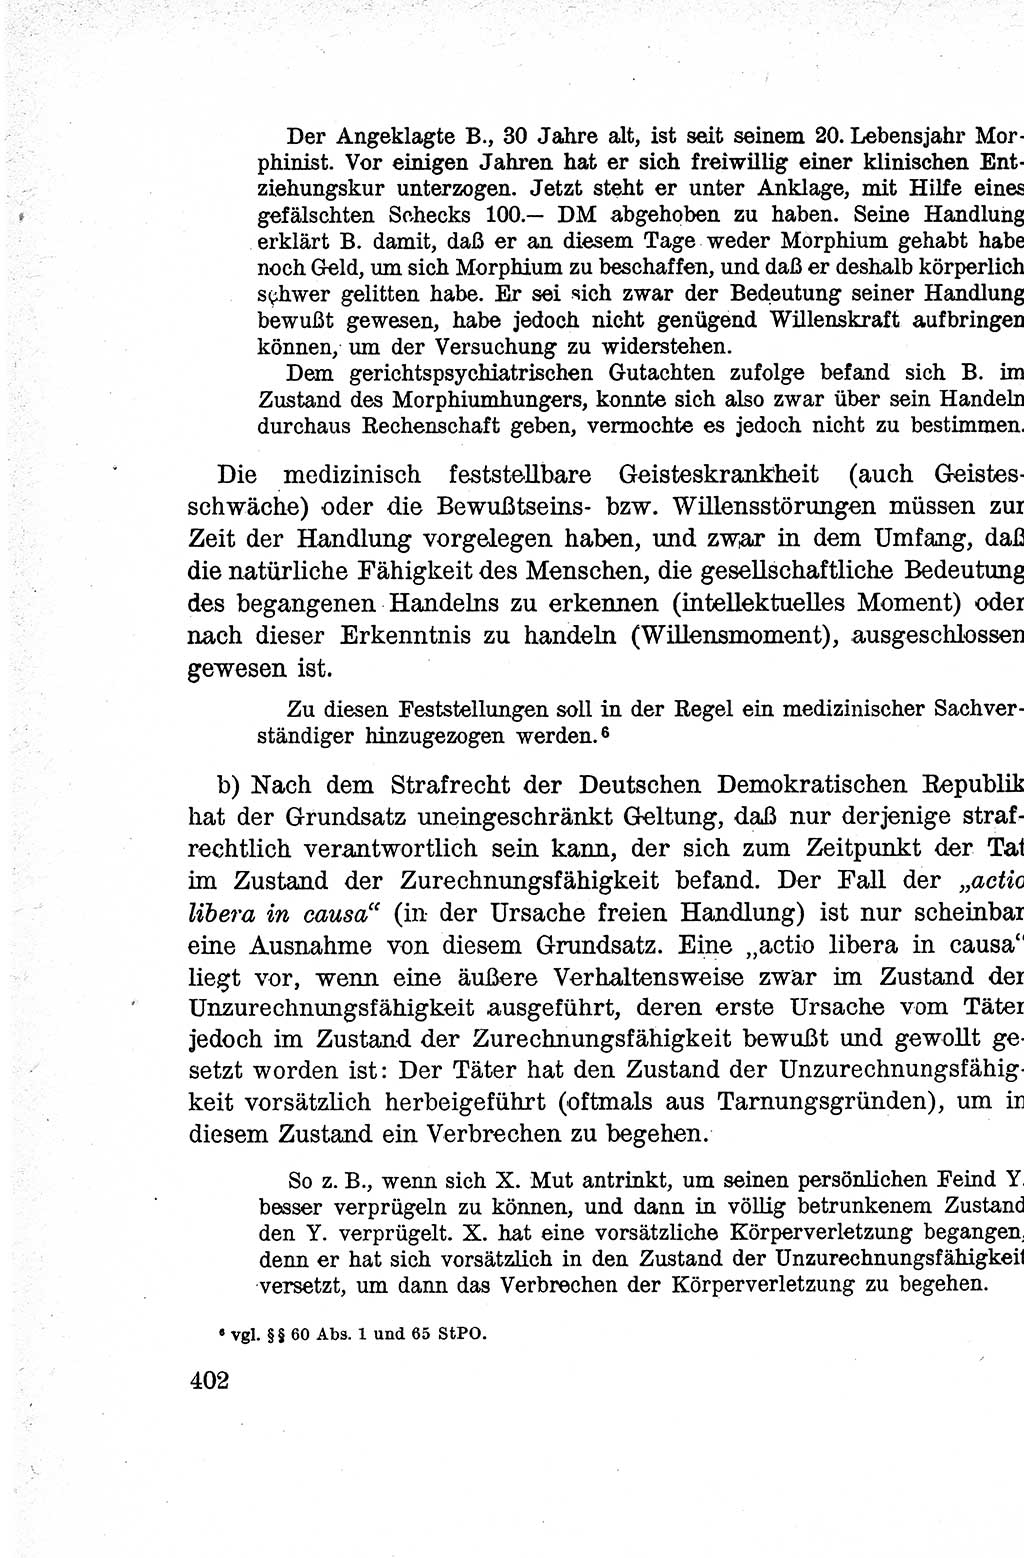 Lehrbuch des Strafrechts der Deutschen Demokratischen Republik (DDR), Allgemeiner Teil 1959, Seite 402 (Lb. Strafr. DDR AT 1959, S. 402)